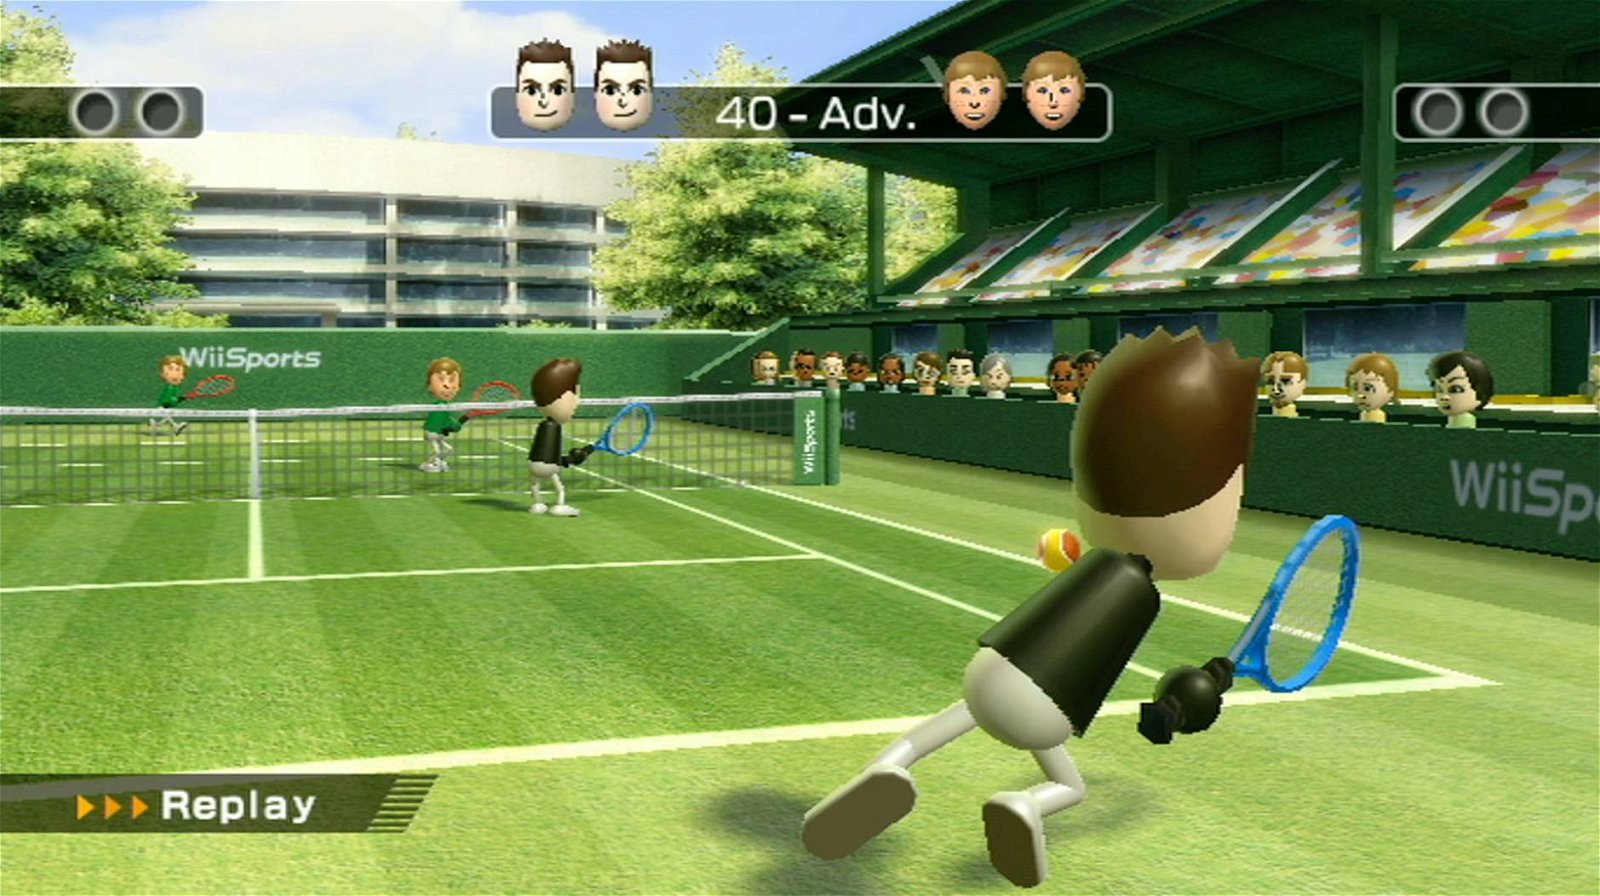 Immagine di Wii Sports: impennato il prezzo sui siti di rivendita a causa del Coronavirus